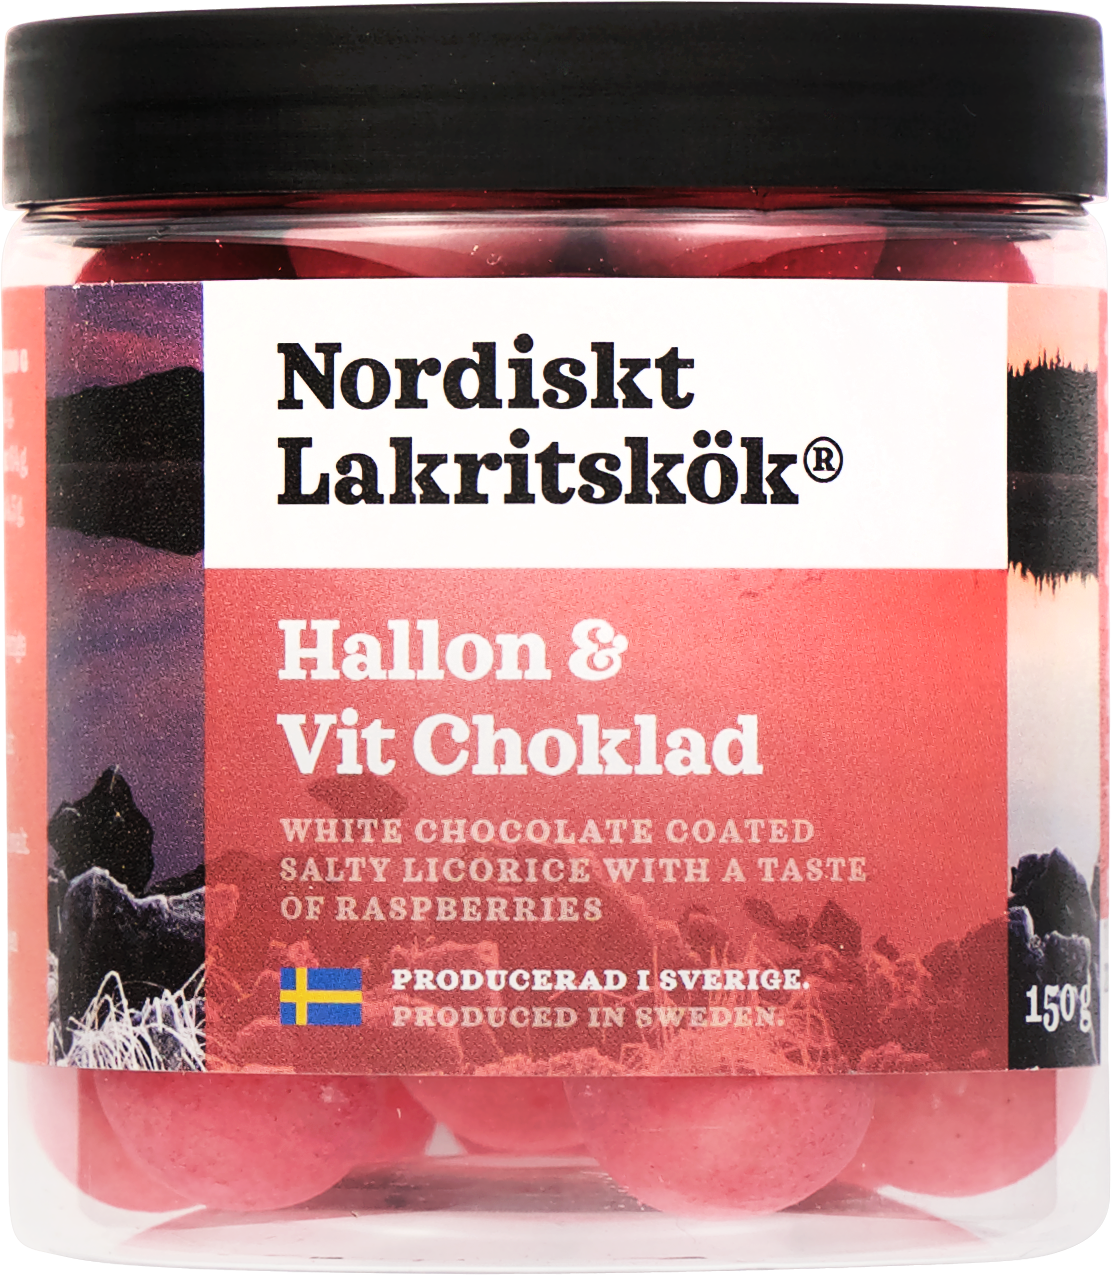 Nodiskt Lakritskök Hallon & Vit Choklad 150g